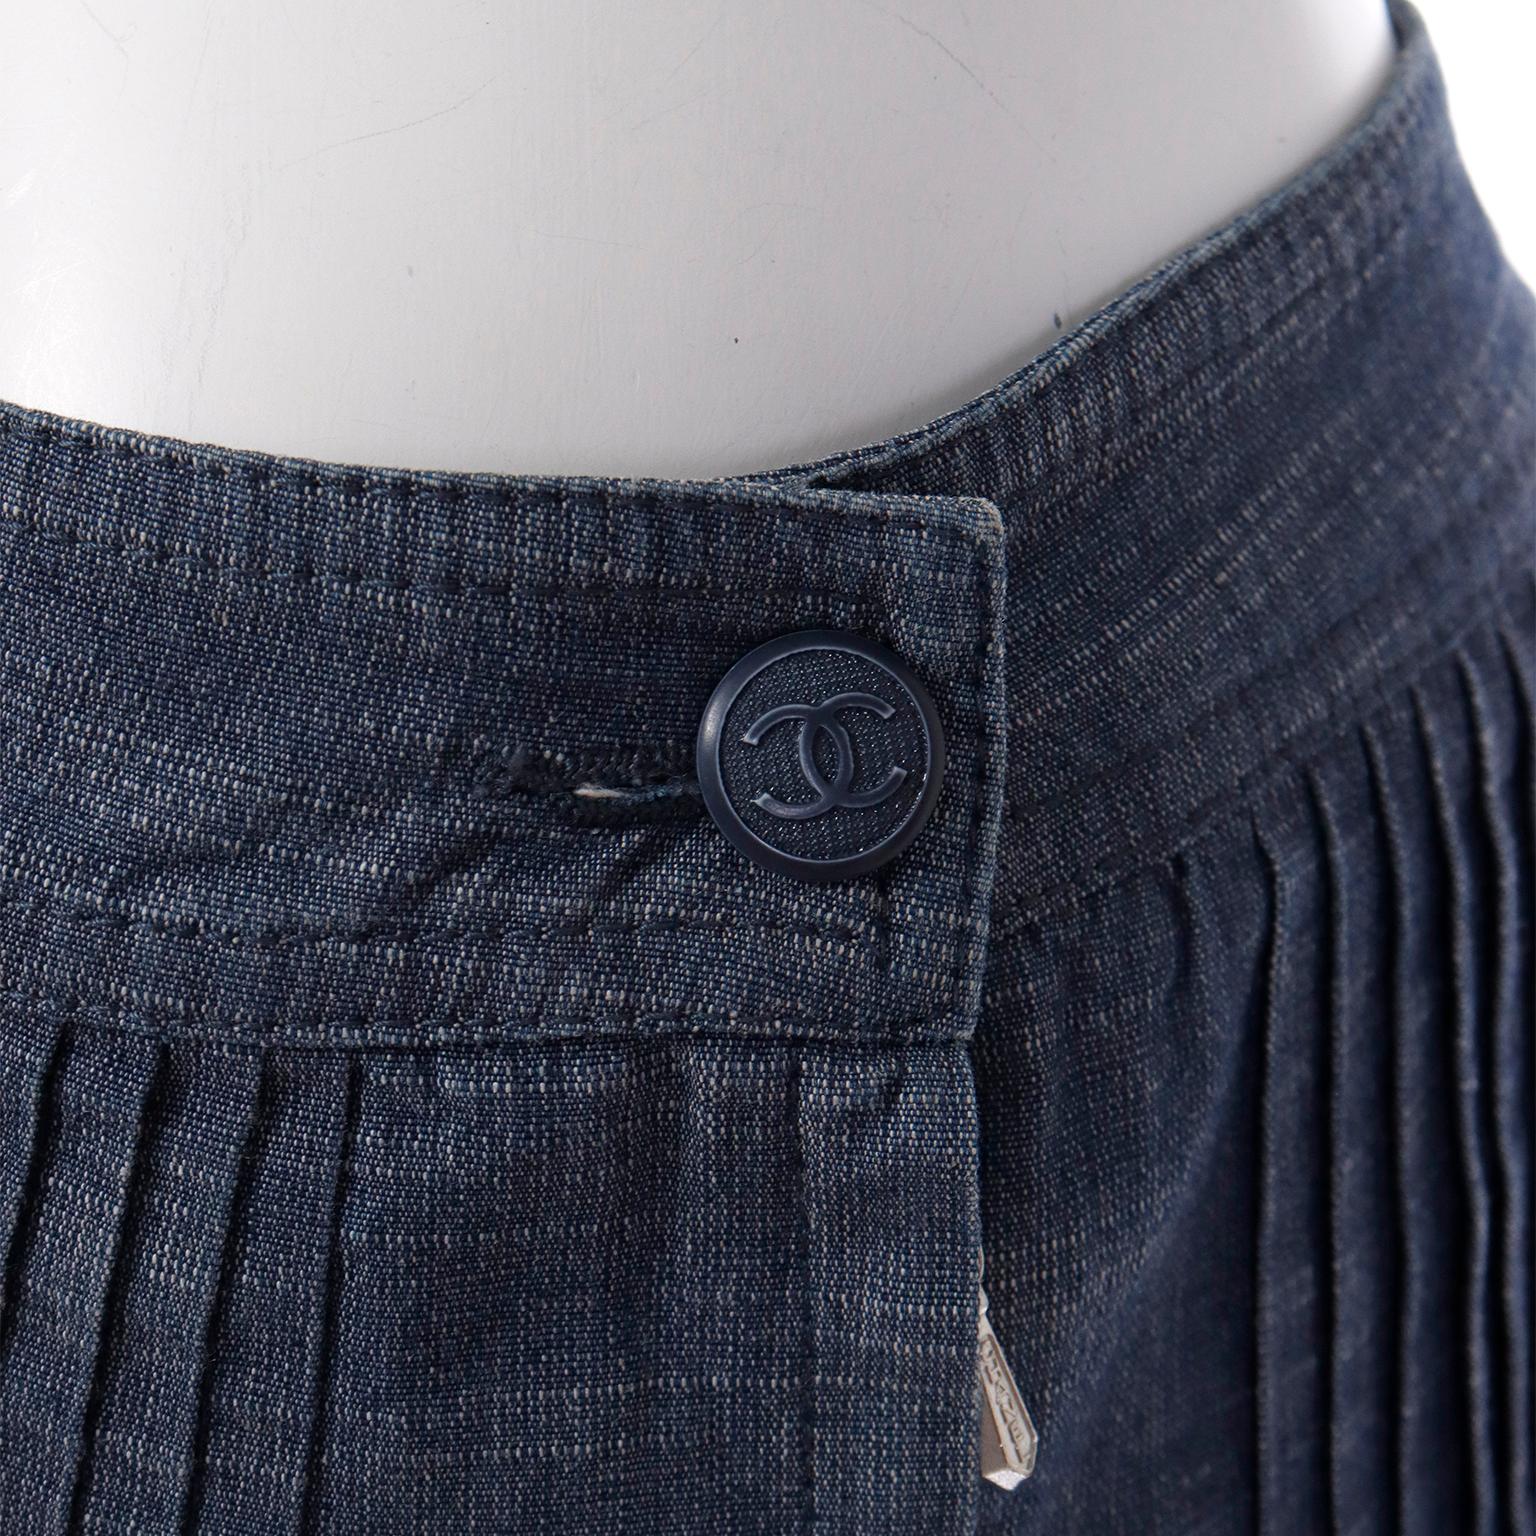 Black Chanel Vintage Pants 2003 Low Waist Spring Runway Pleated Denim Jean Trousers